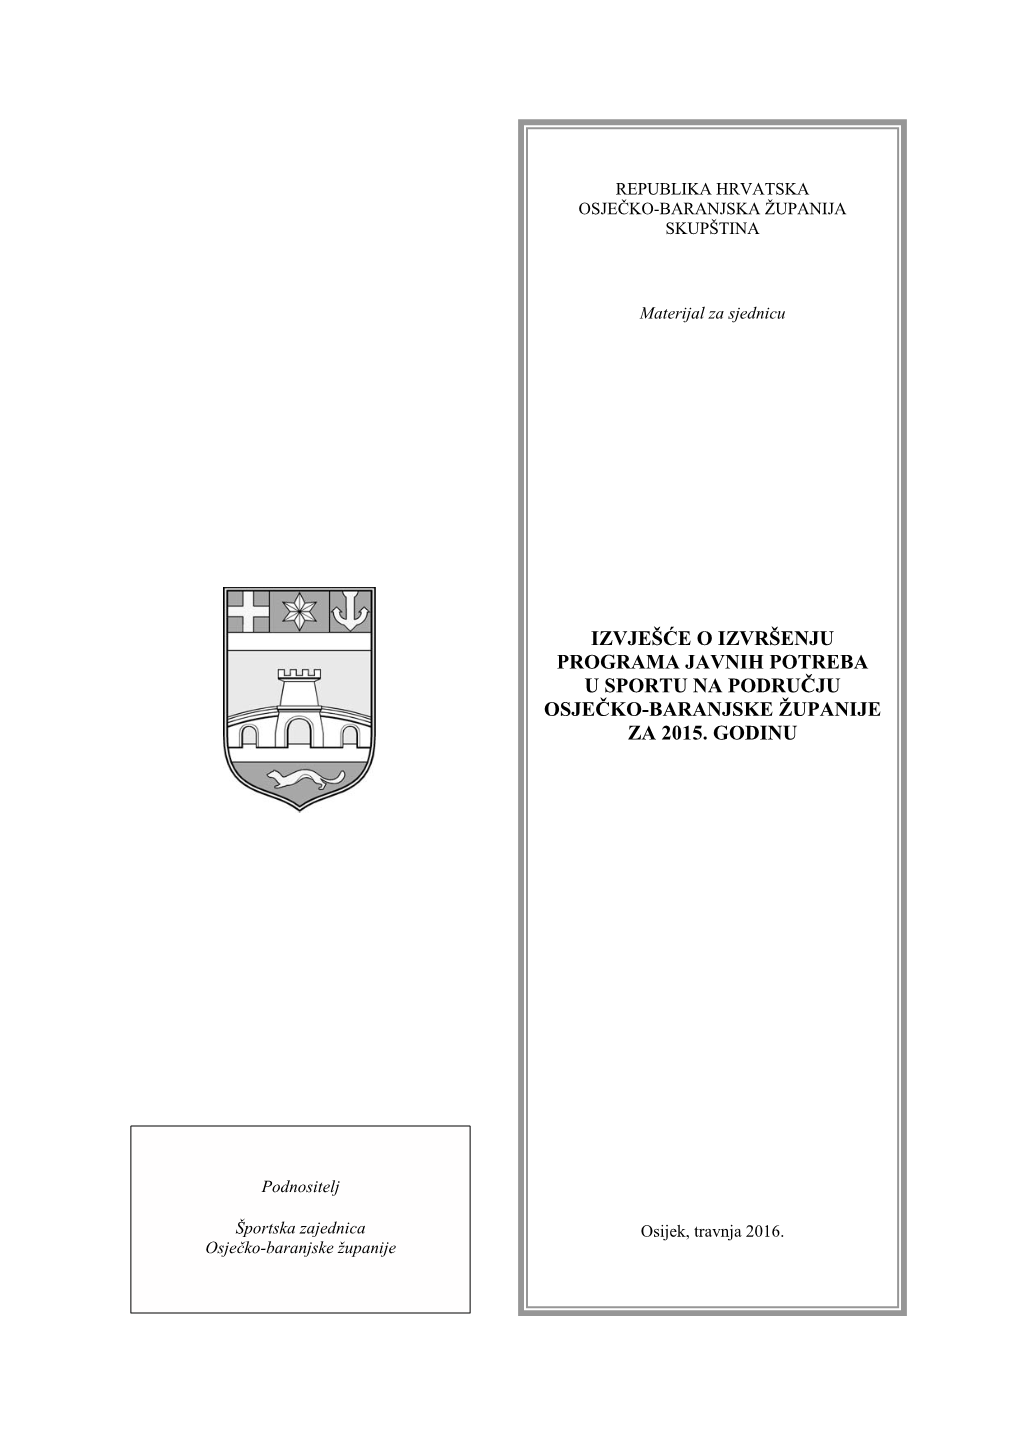 Izvješće O Izvršenju Programa Javnih Potreba U Sportu Na Području Osječko-Baranjske Županije Za 2015